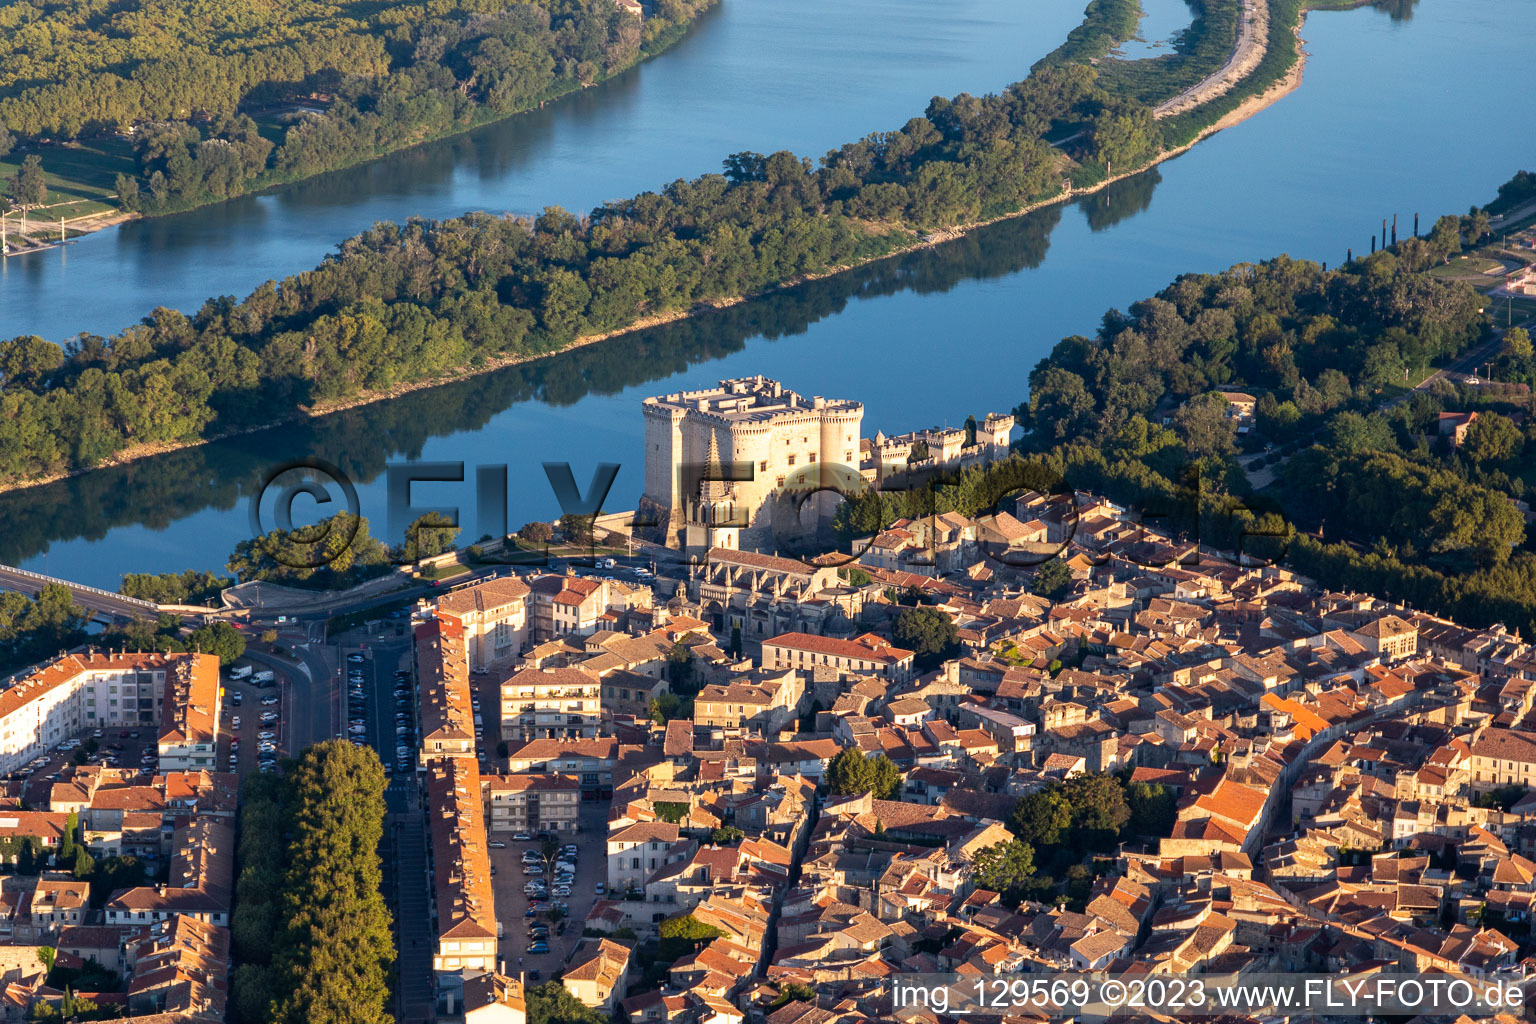 Luftbild von Stadtansicht am Ufer des Flußverlaufes der Rhone mit dem Schloß Château de Tarascon in Tarascon in Provence-Alpes-Cote d'Azur im Bundesland Bouches-du-Rhône, Frankreich